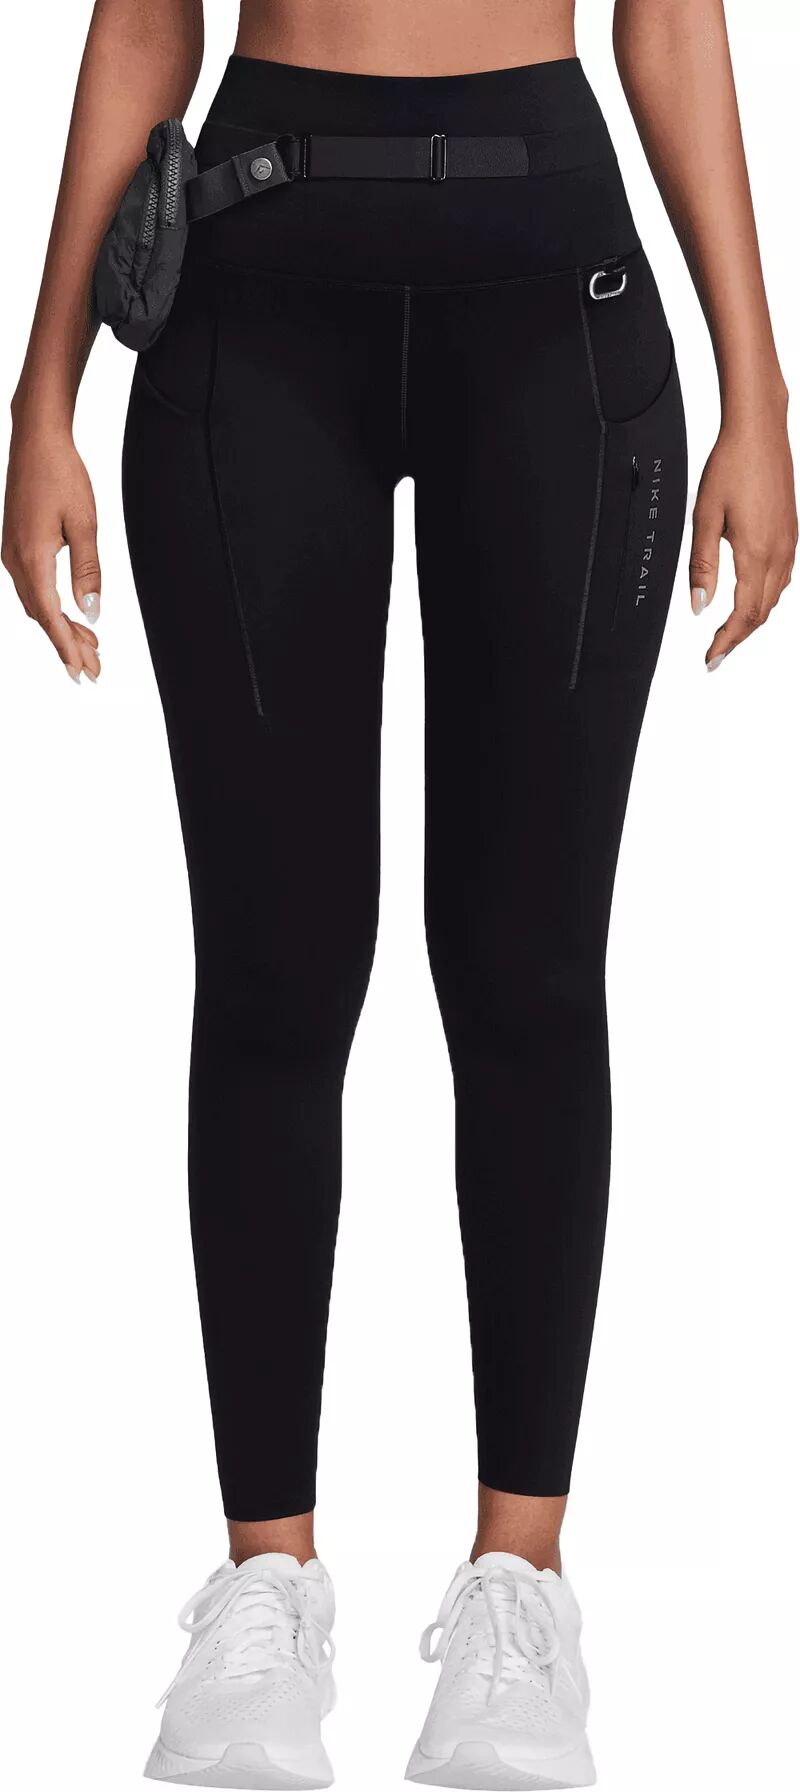 Женские леггинсы Nike Go Trail с высокой талией размером 7/8, черный женские леггинсы с сетчатой вставкой pro 365 с высокой талией и шириной 7 8 nike черный